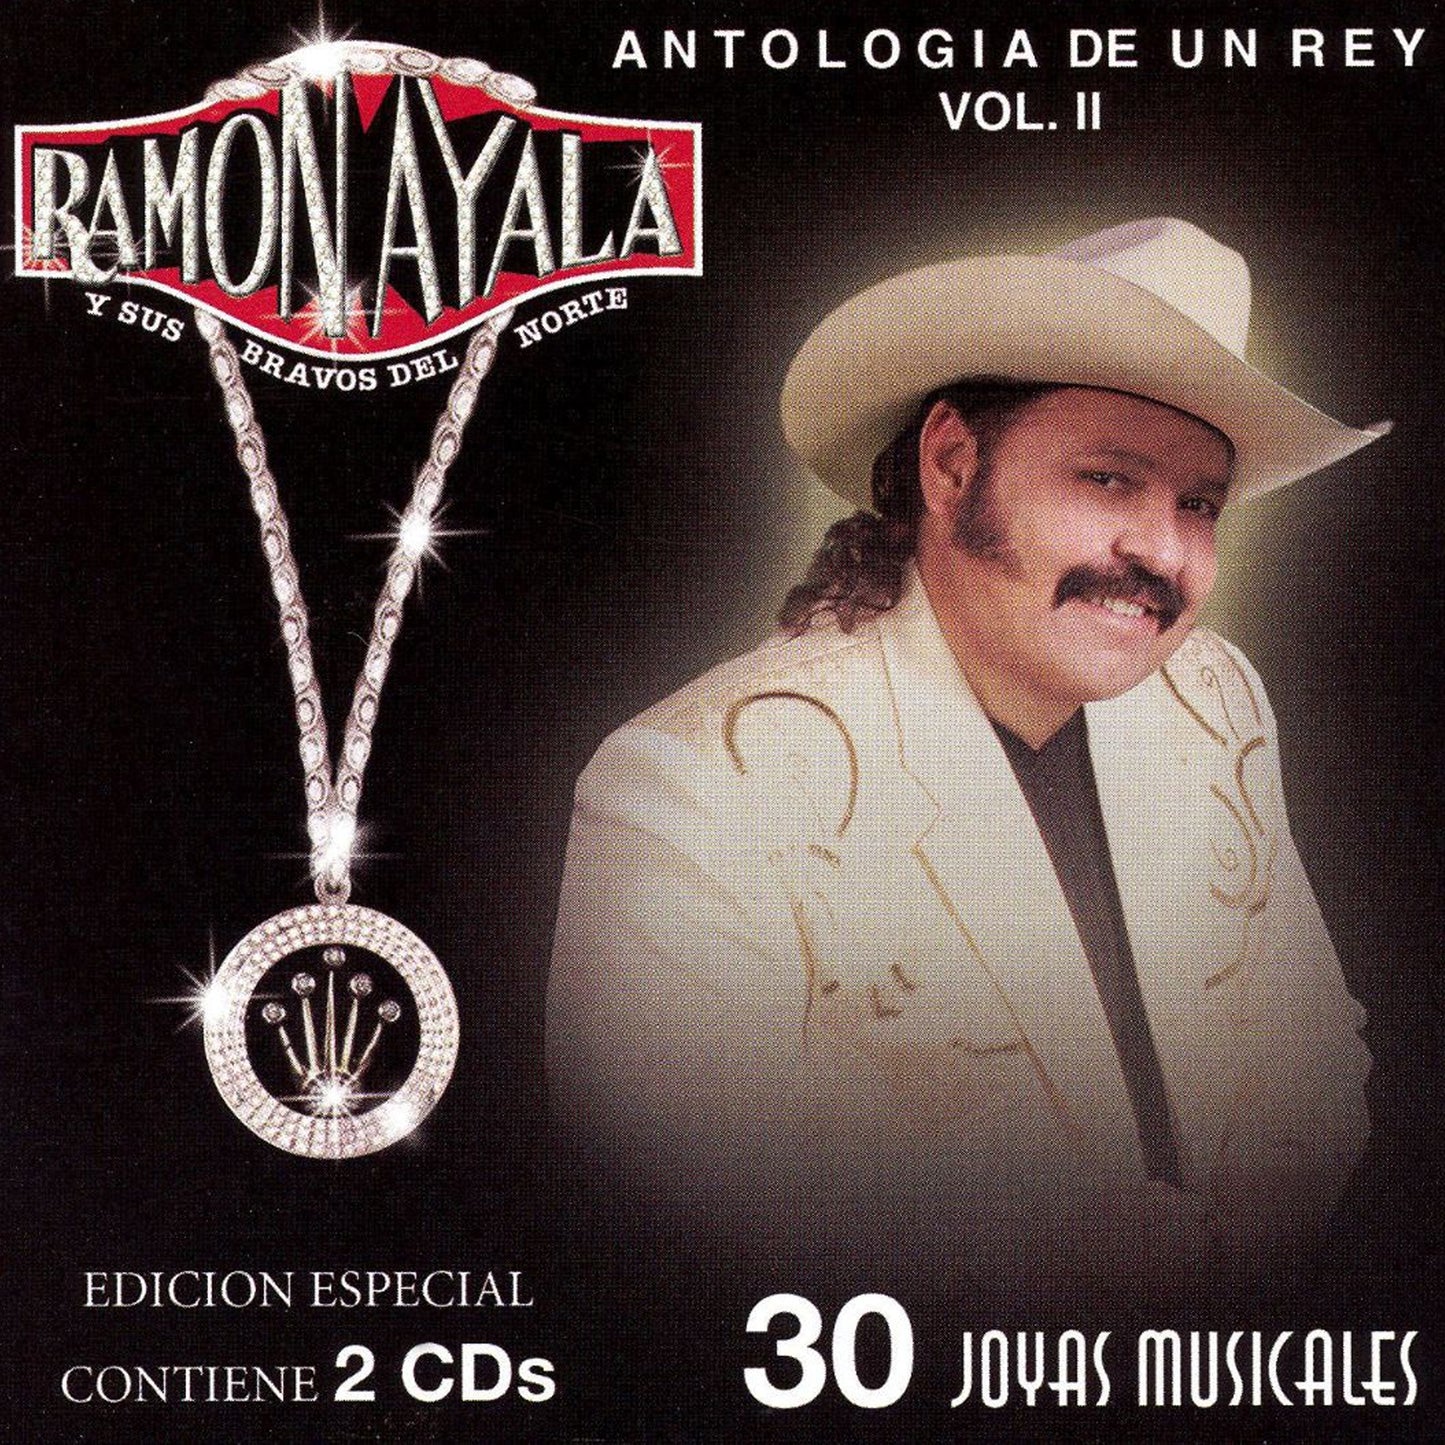 Ramon Ayala Y Sus Bravos Del Norte - Antologia De Un Rey Vol. 2, 30 Joyas Musicales (CD)